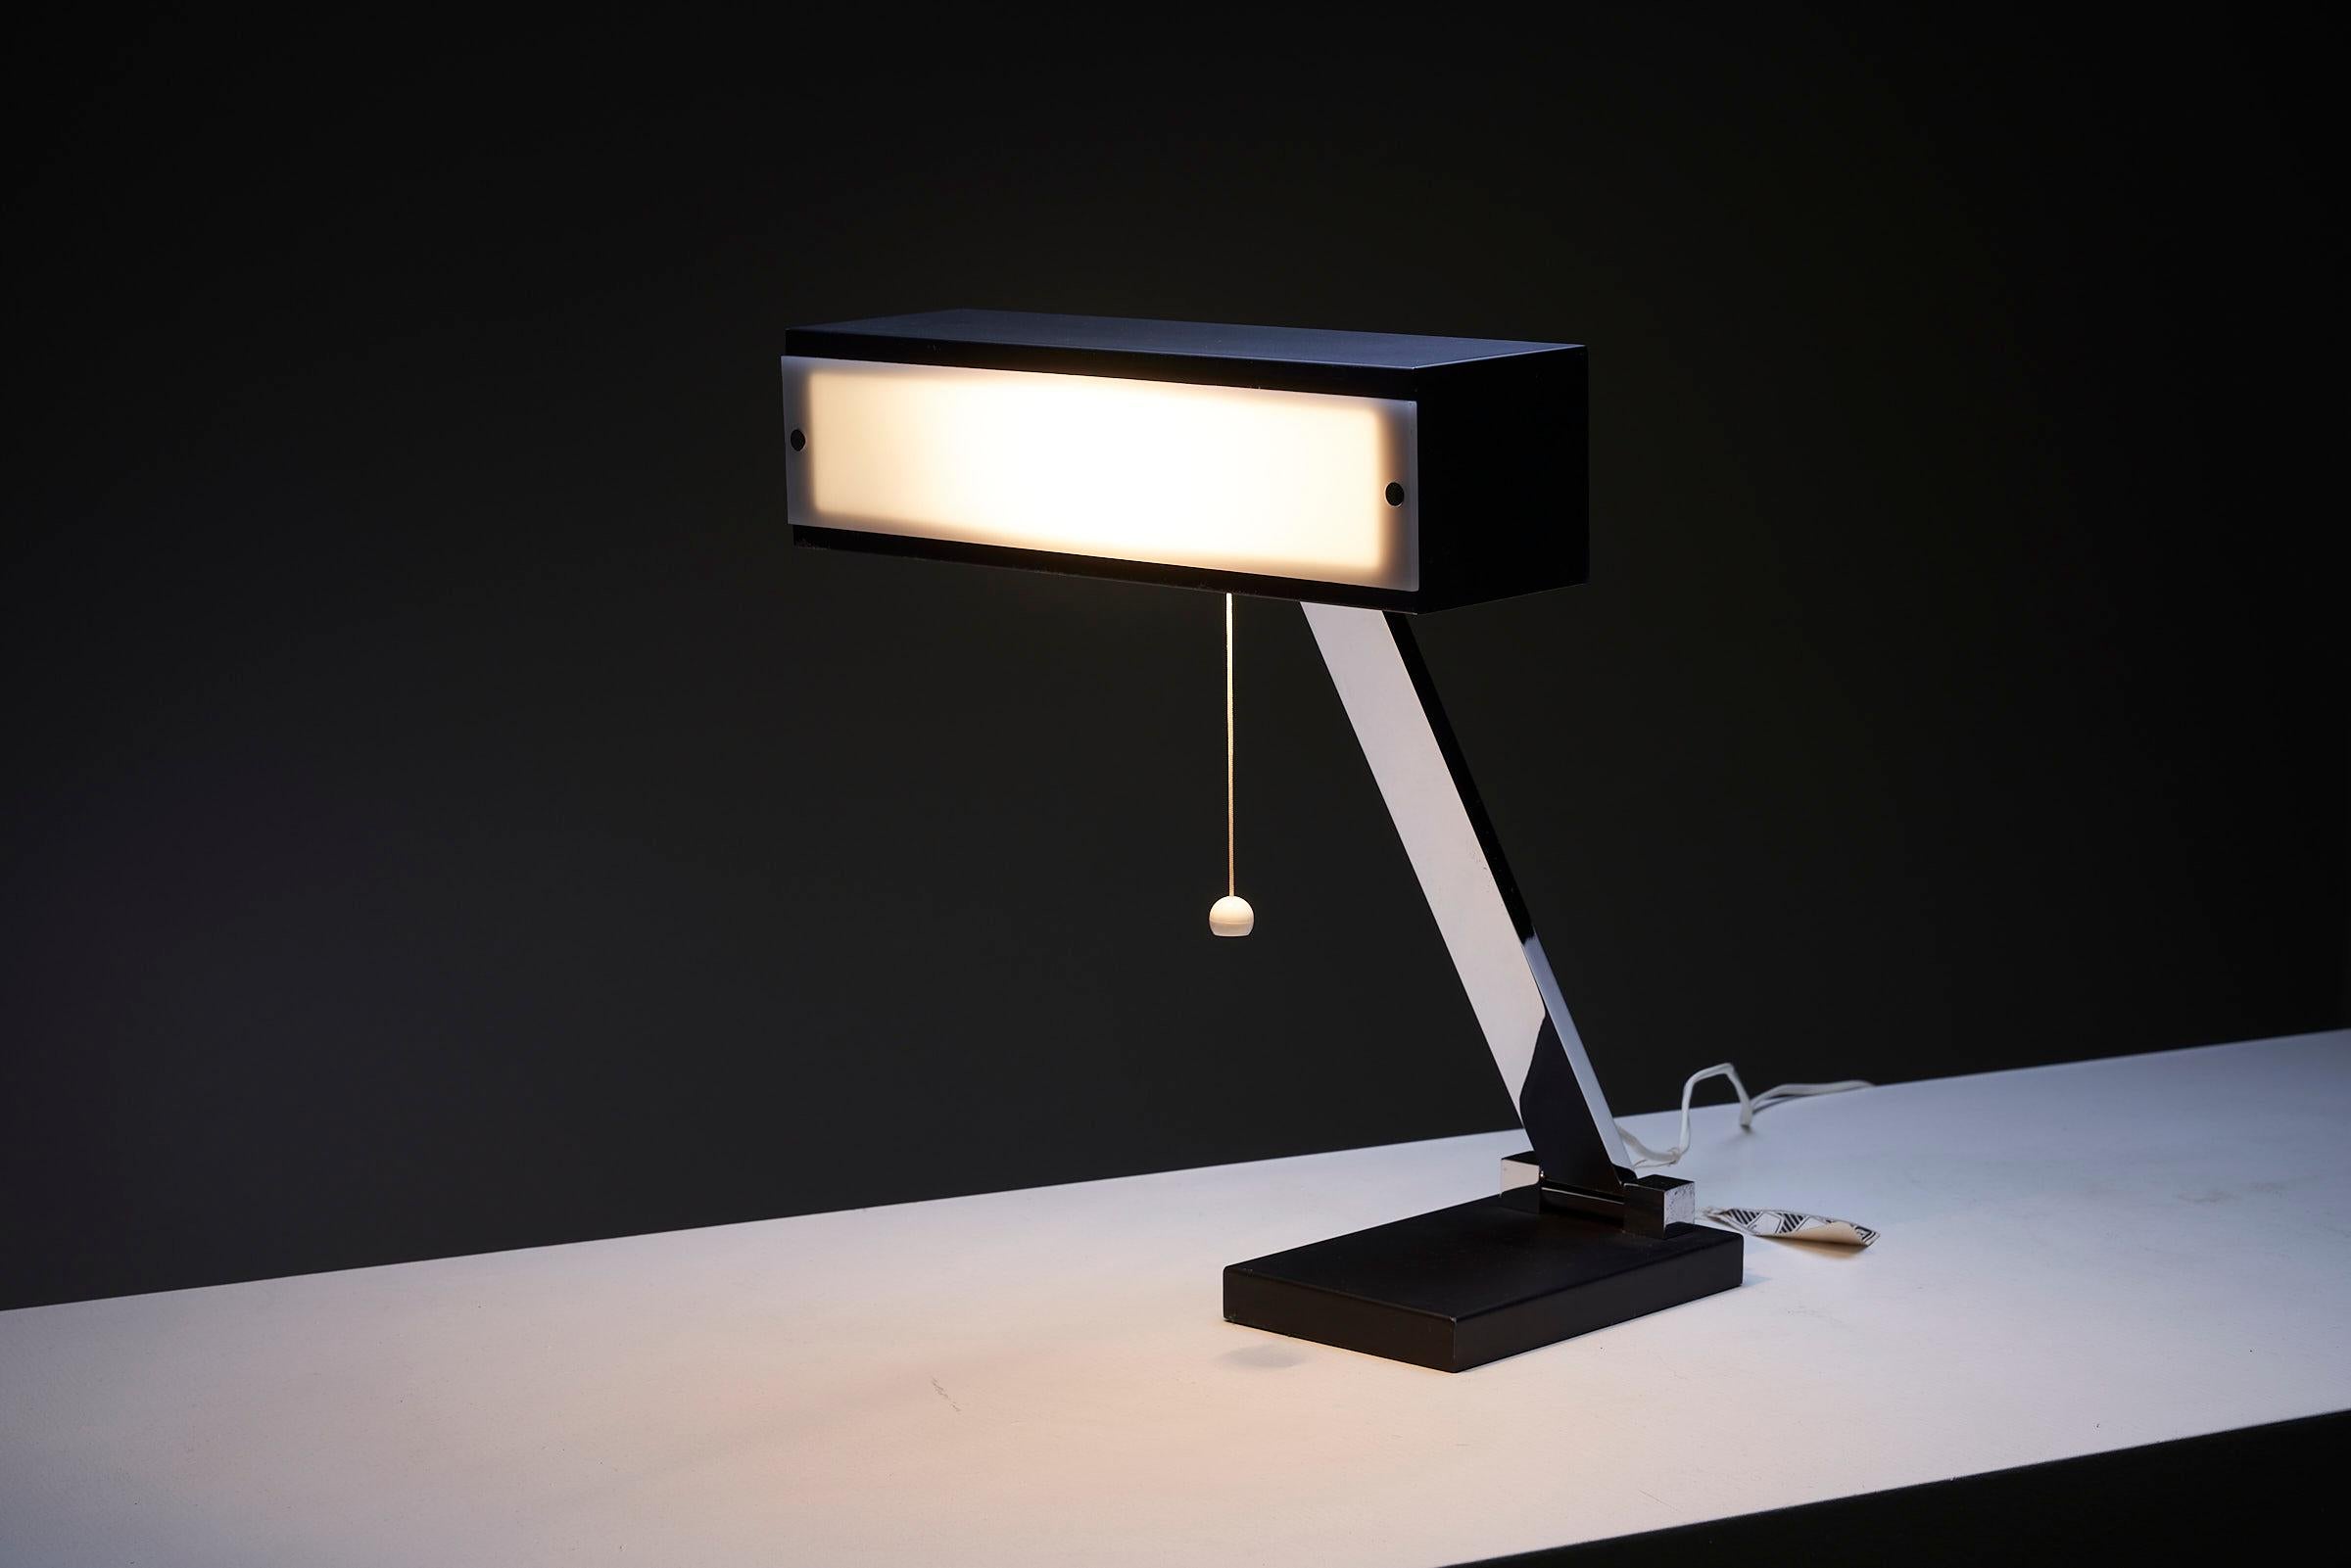 La lampe de table Boulanger, Belgique, offre une solution d'éclairage élégante et moderne. La lampe est dotée d'une base et d'un abat-jour noirs, reliés par une tige chromée pour plus de stabilité et d'attrait visuel. L'abat-jour est équipé d'un